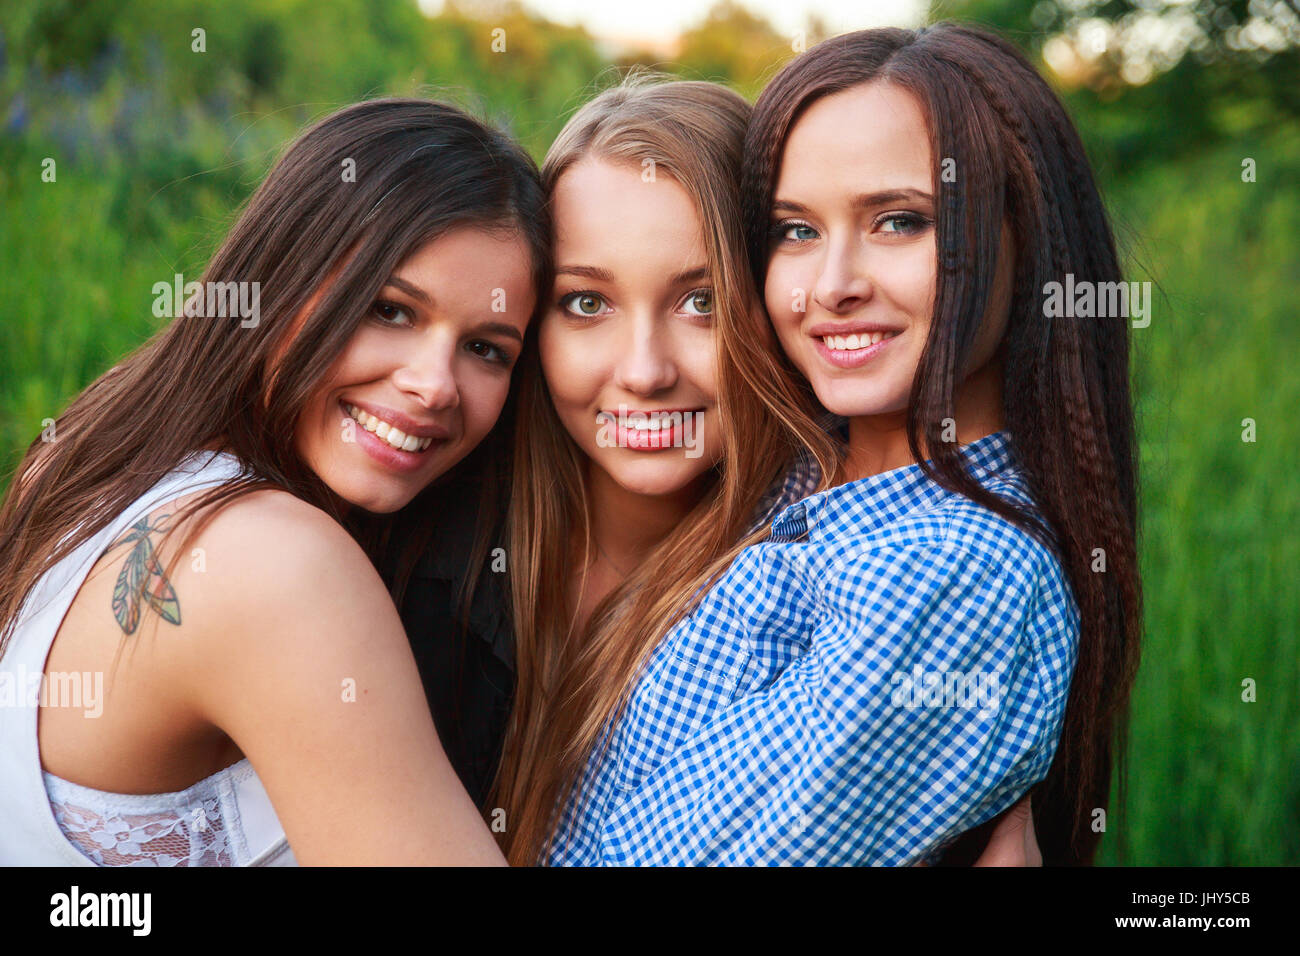 Amiche amicizia felicità nozione comunitaria. Tre amici sorridente abbracciando all'aperto nella natura Foto Stock